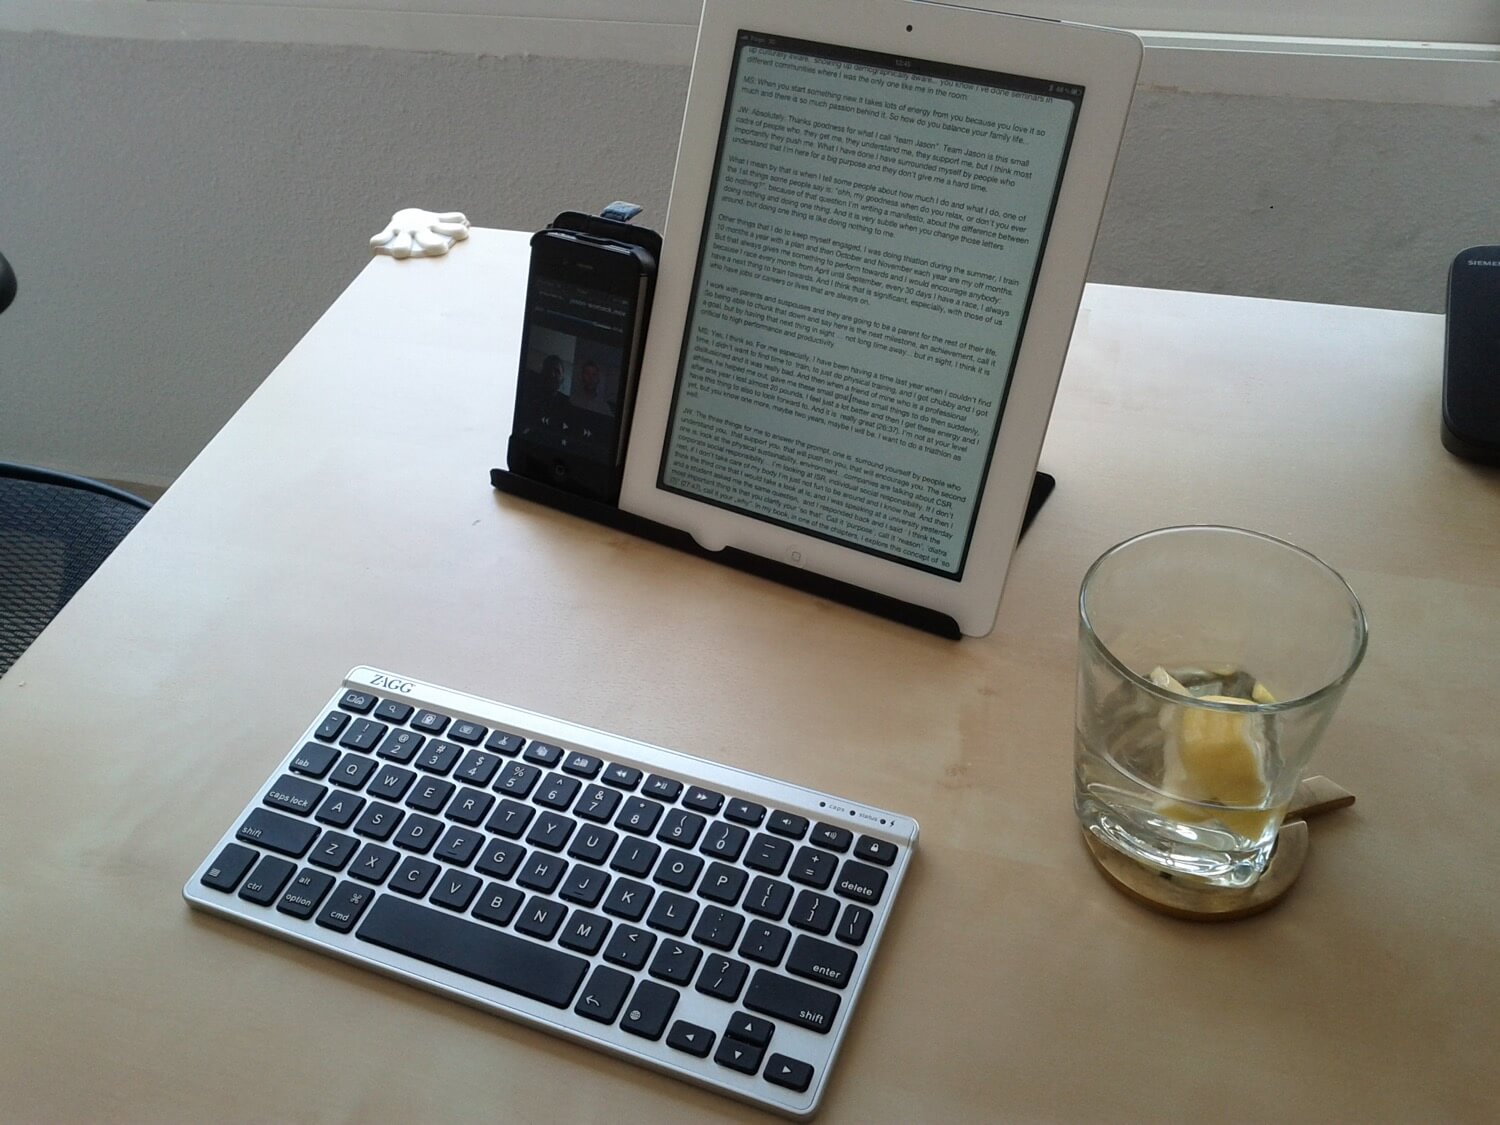 Part 2 - Writing - iPad as my main computer